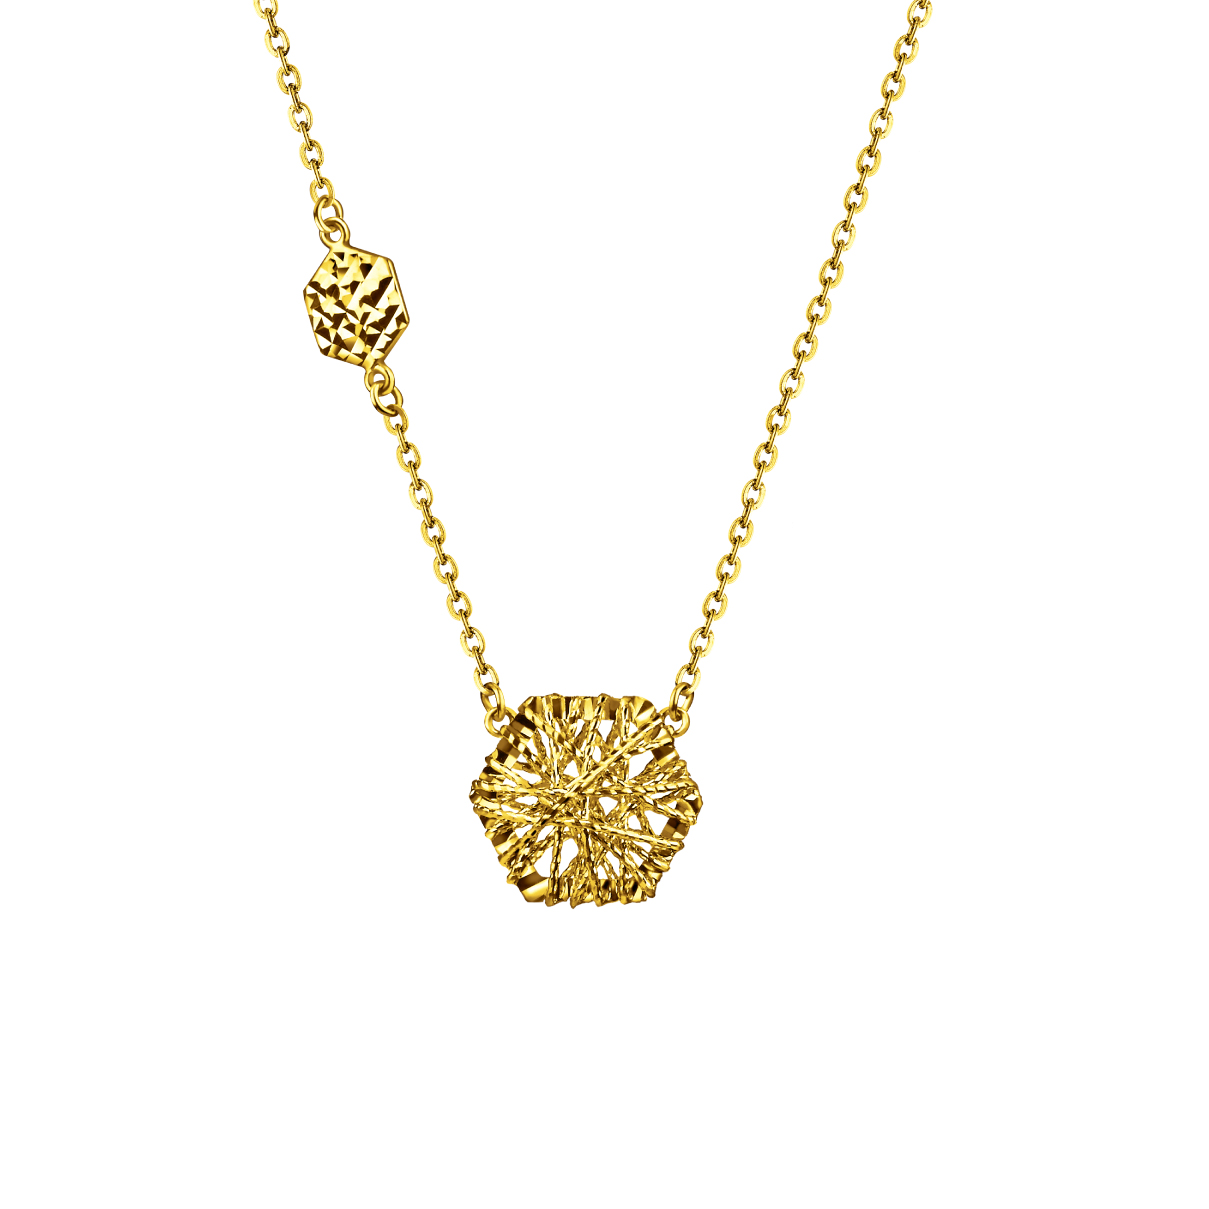 Goldstyle "Freewheeling" Gold Necklace